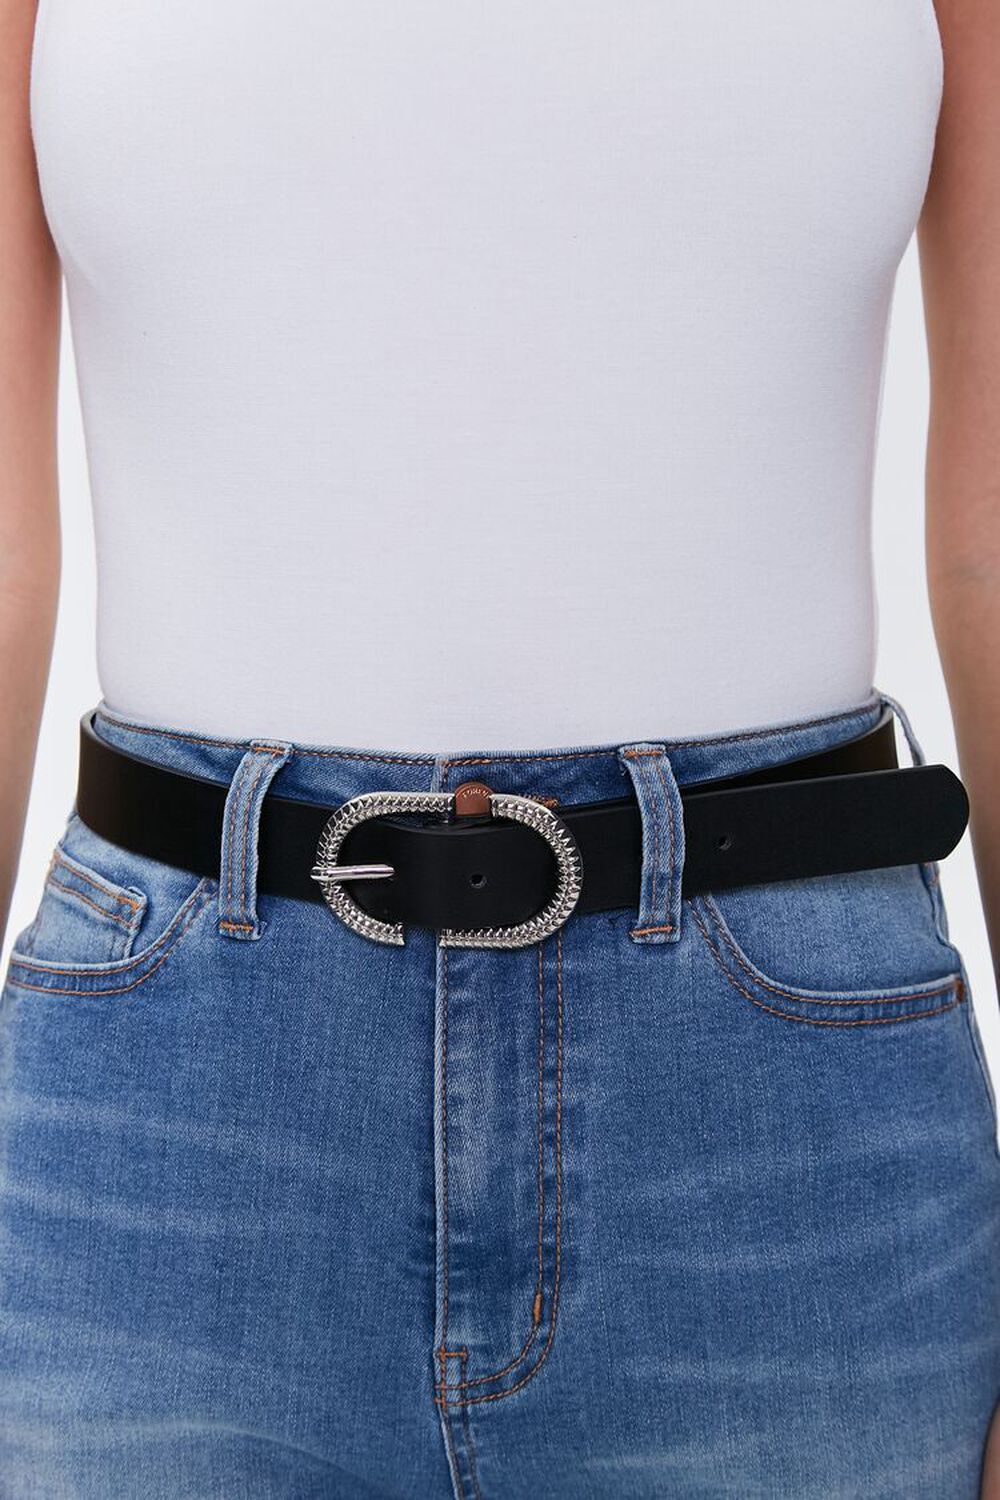 Engraved Buckle Hip Belt